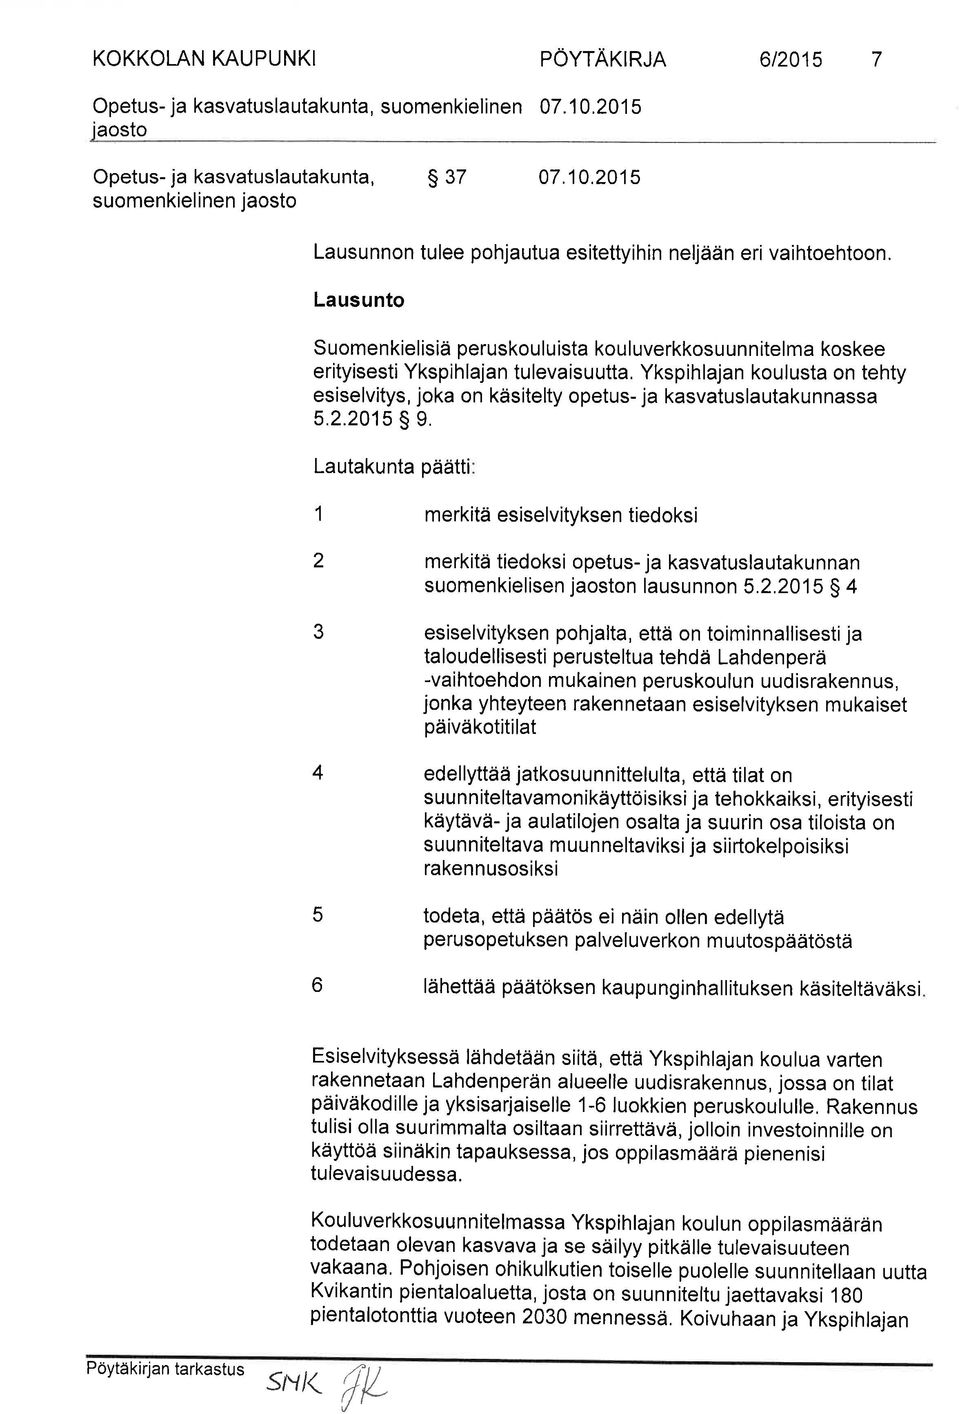 Lausunto Suomenkielisiä peruskouluista kouluverkkosuunnitelma koskee erityisesti Ykspih lajan tu levaisu utta.